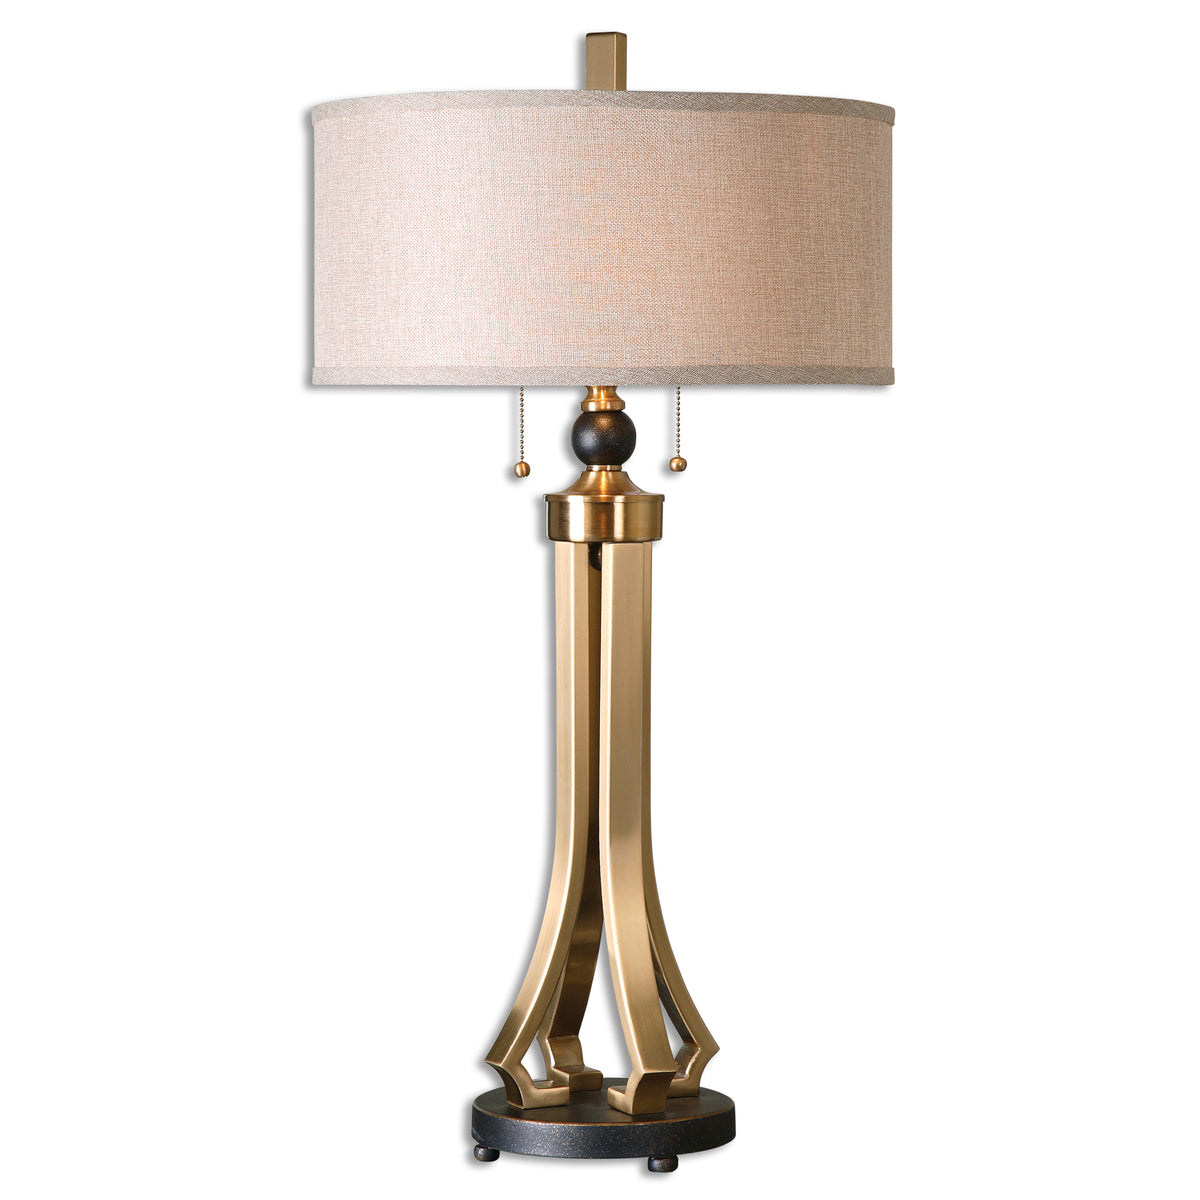 Selvino Table Lamp